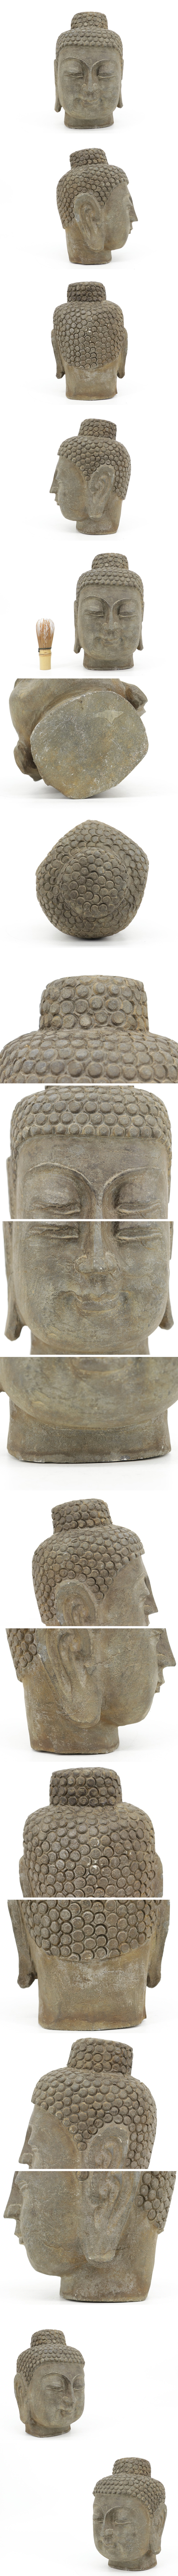 【買い卸値】仏教美術 石彫 仏頭 佛頭 石像 仏像 佛像 残欠 重さ約10Kg 高さ約26㌢ A117 仏像